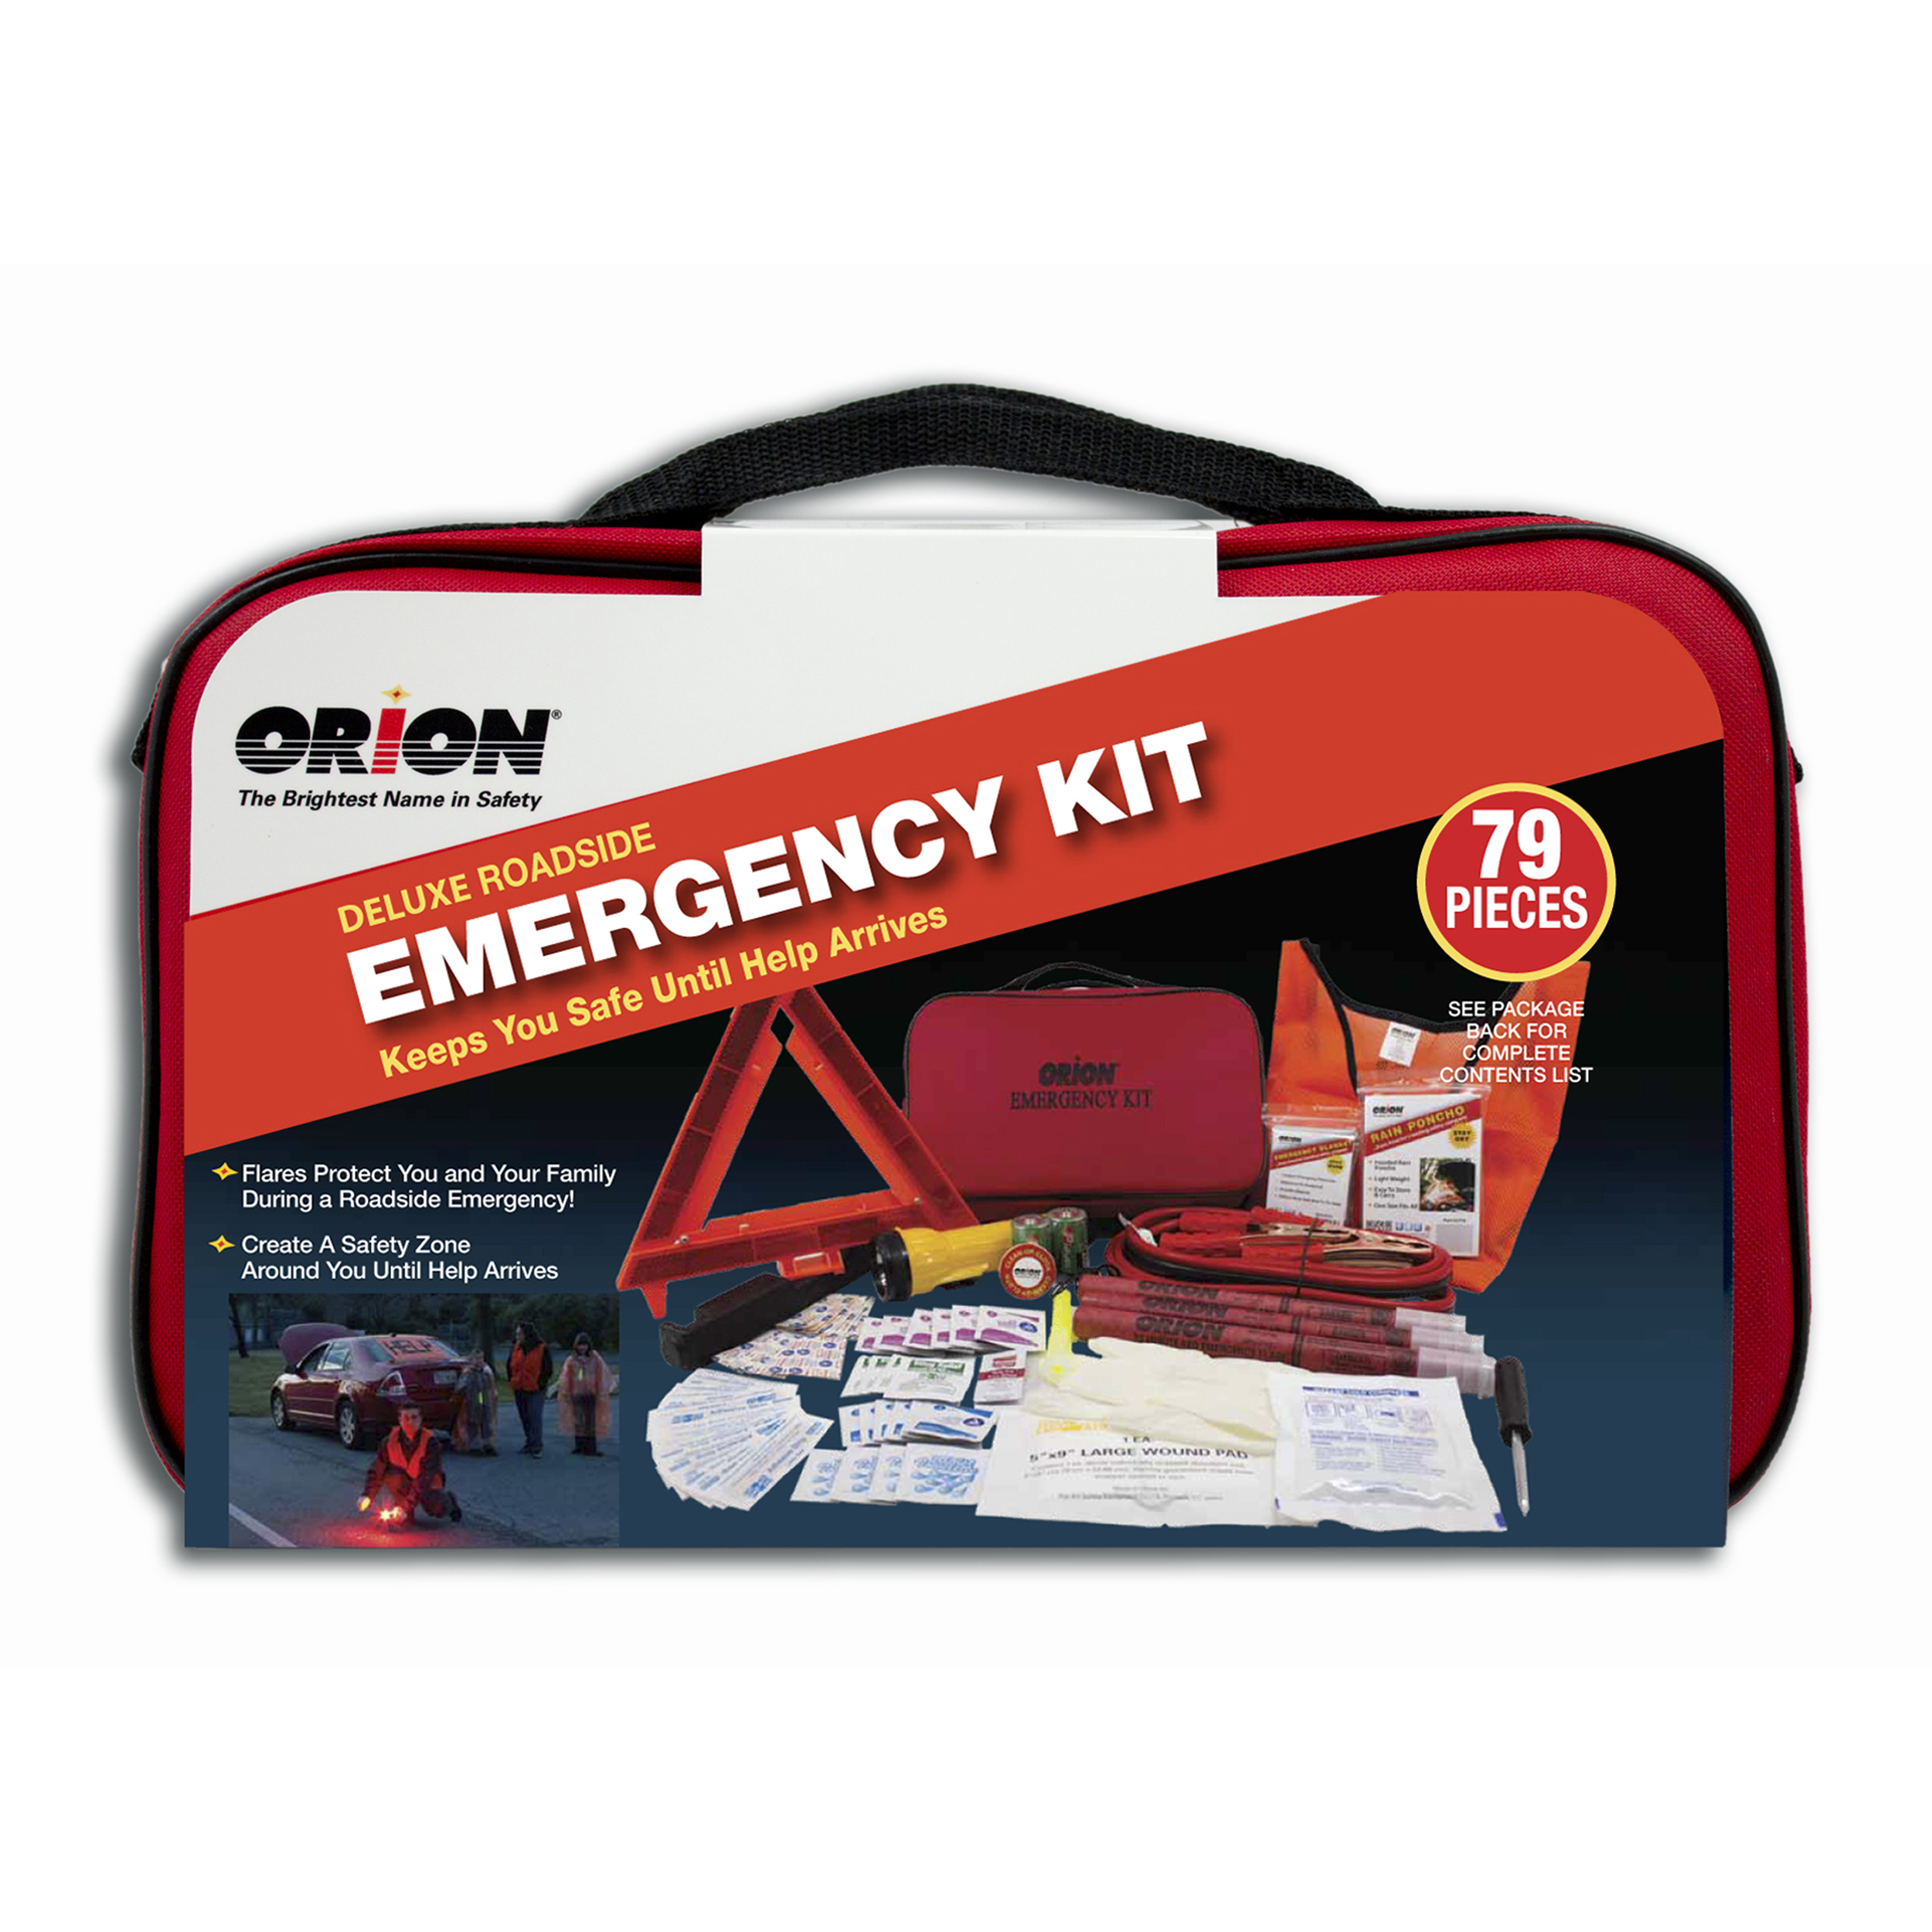 Deluxe Roadside Emergency Kit